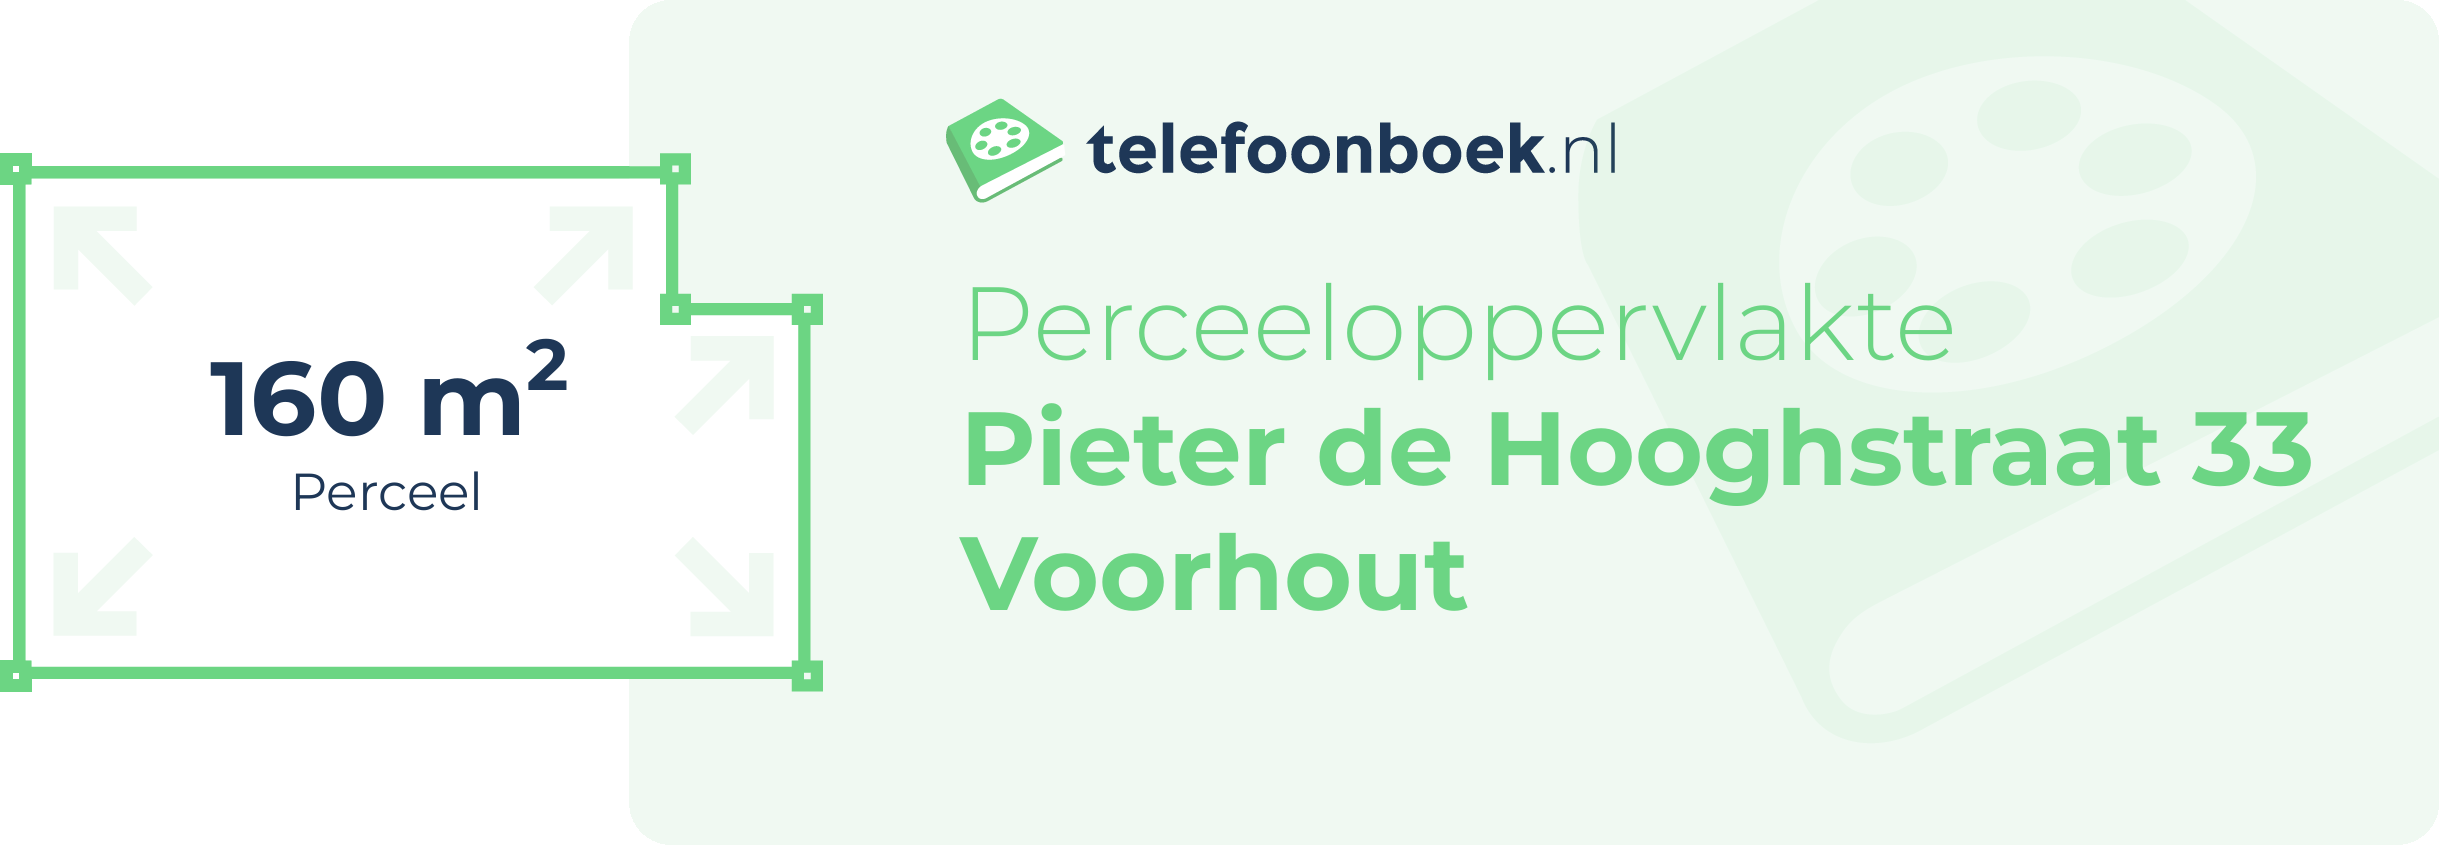 Perceeloppervlakte Pieter De Hooghstraat 33 Voorhout